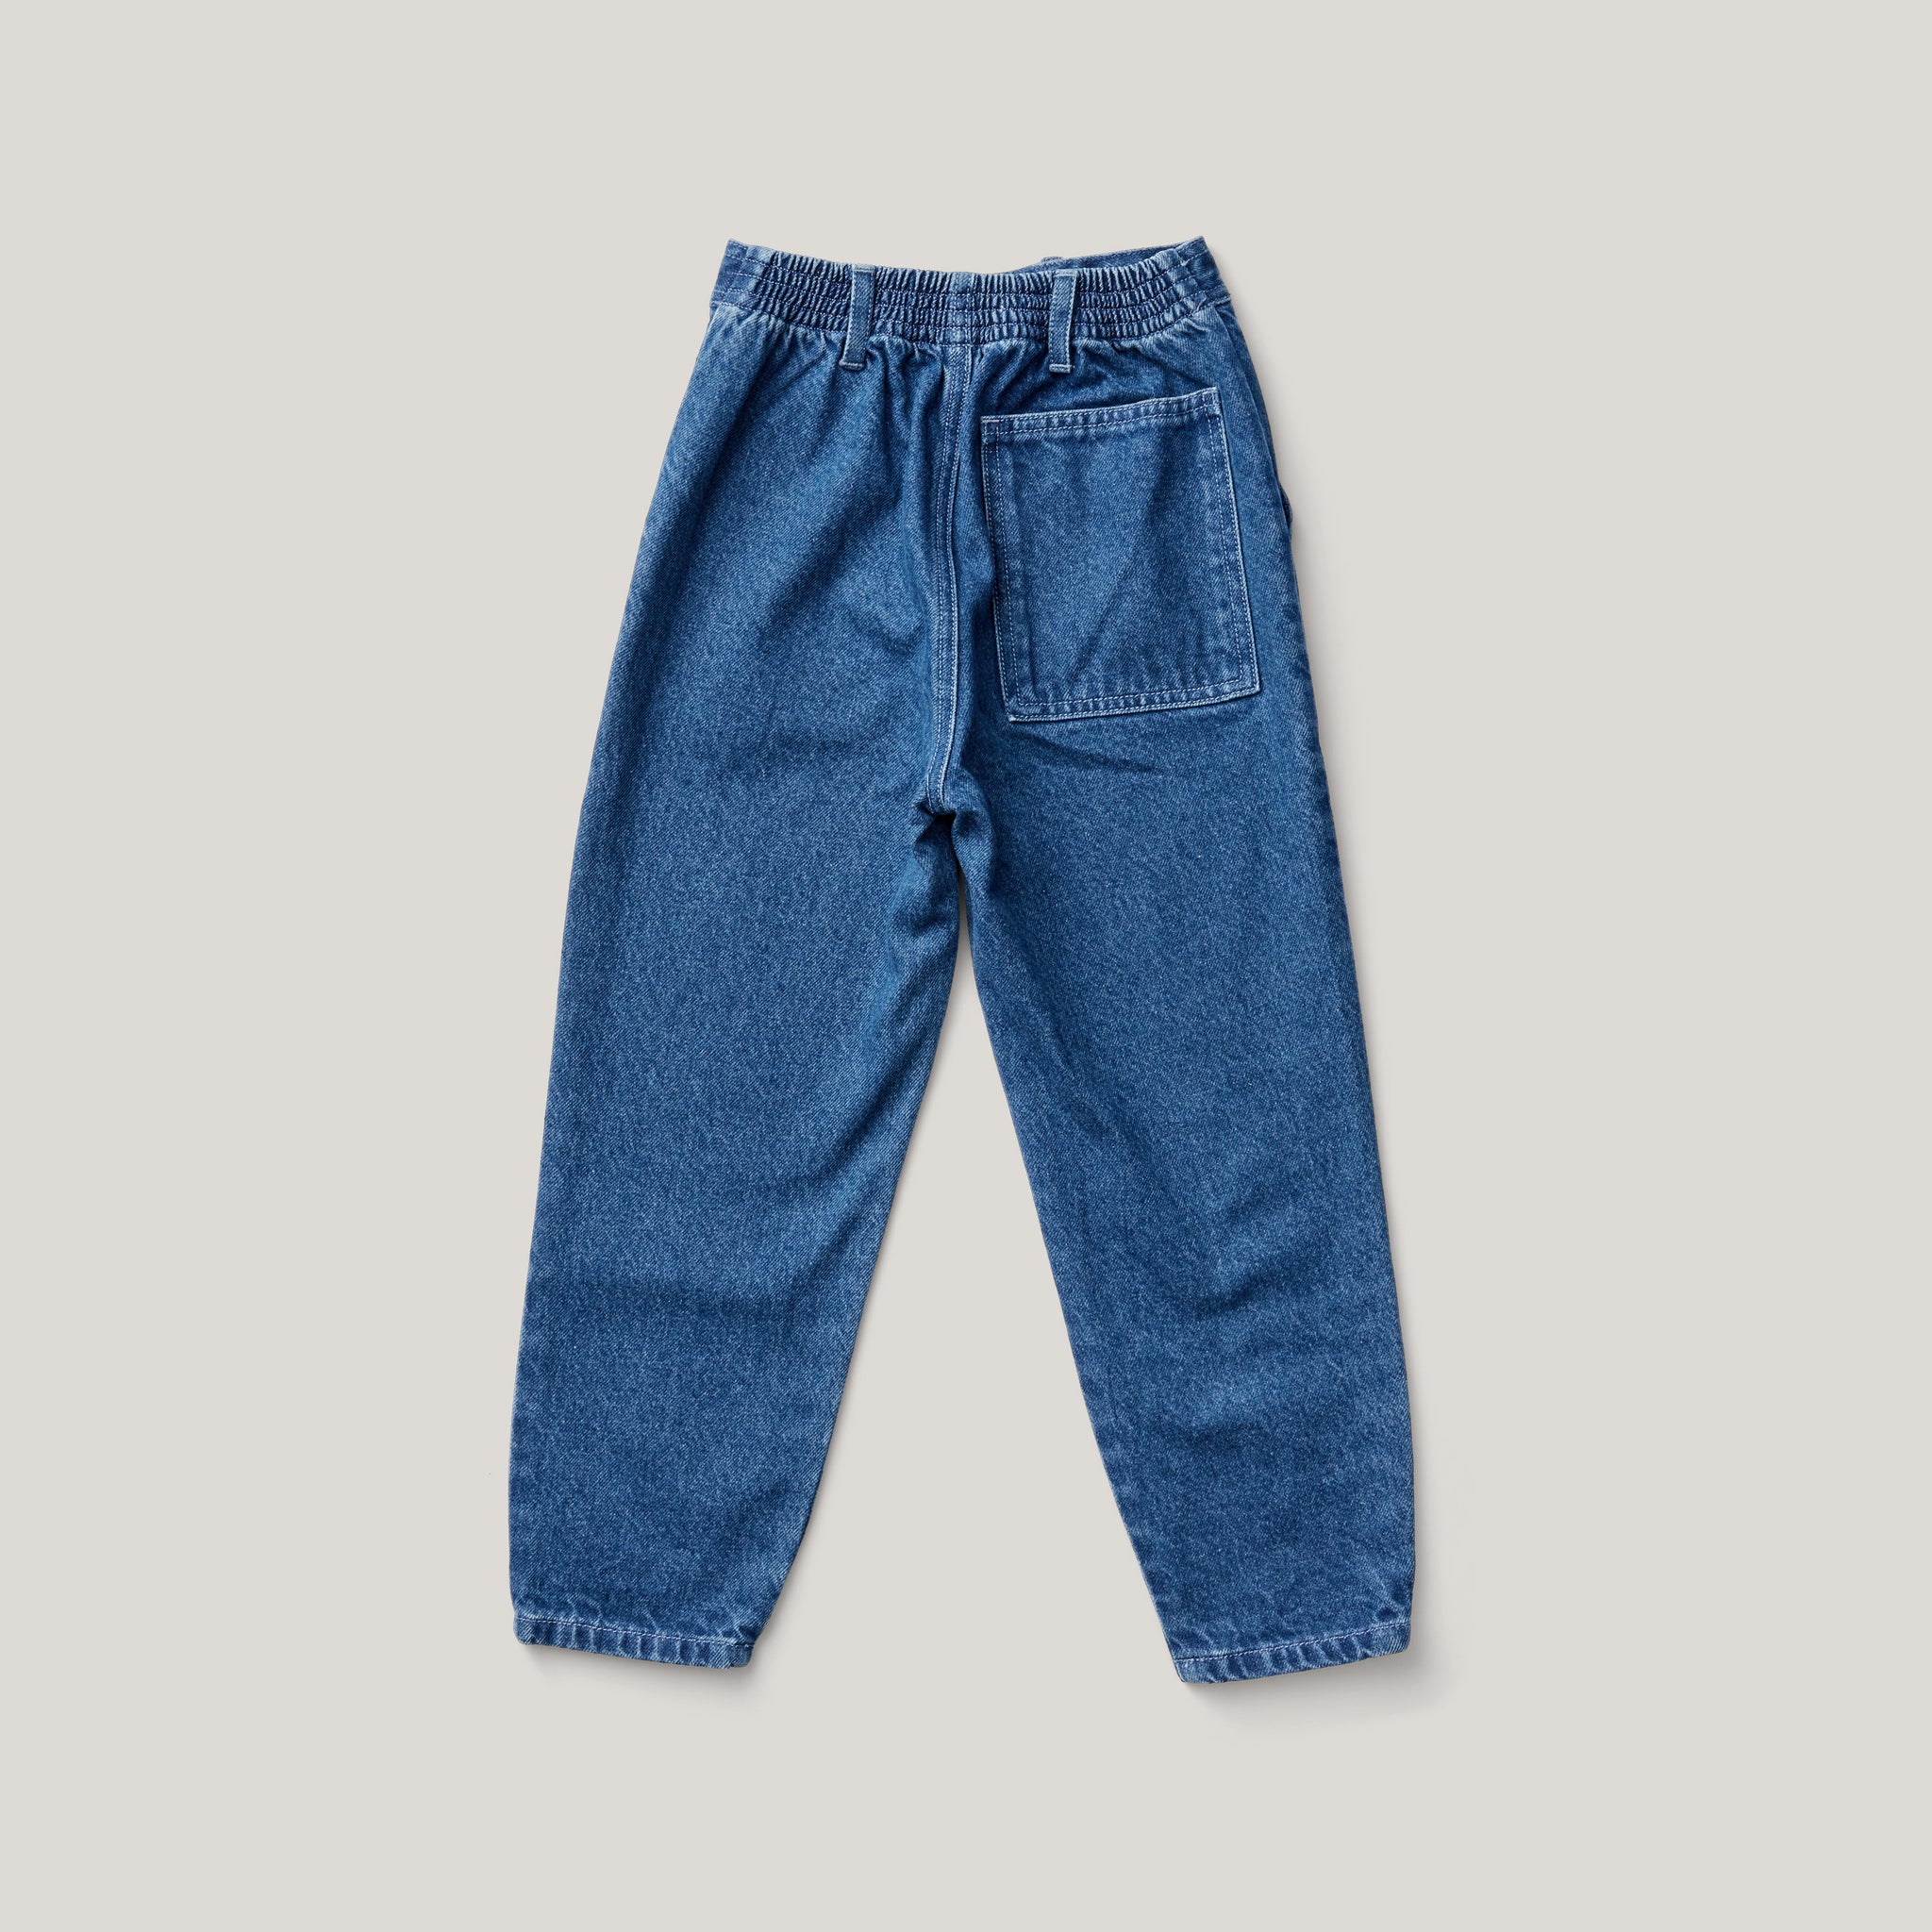 Kit Jean, Medium Denim